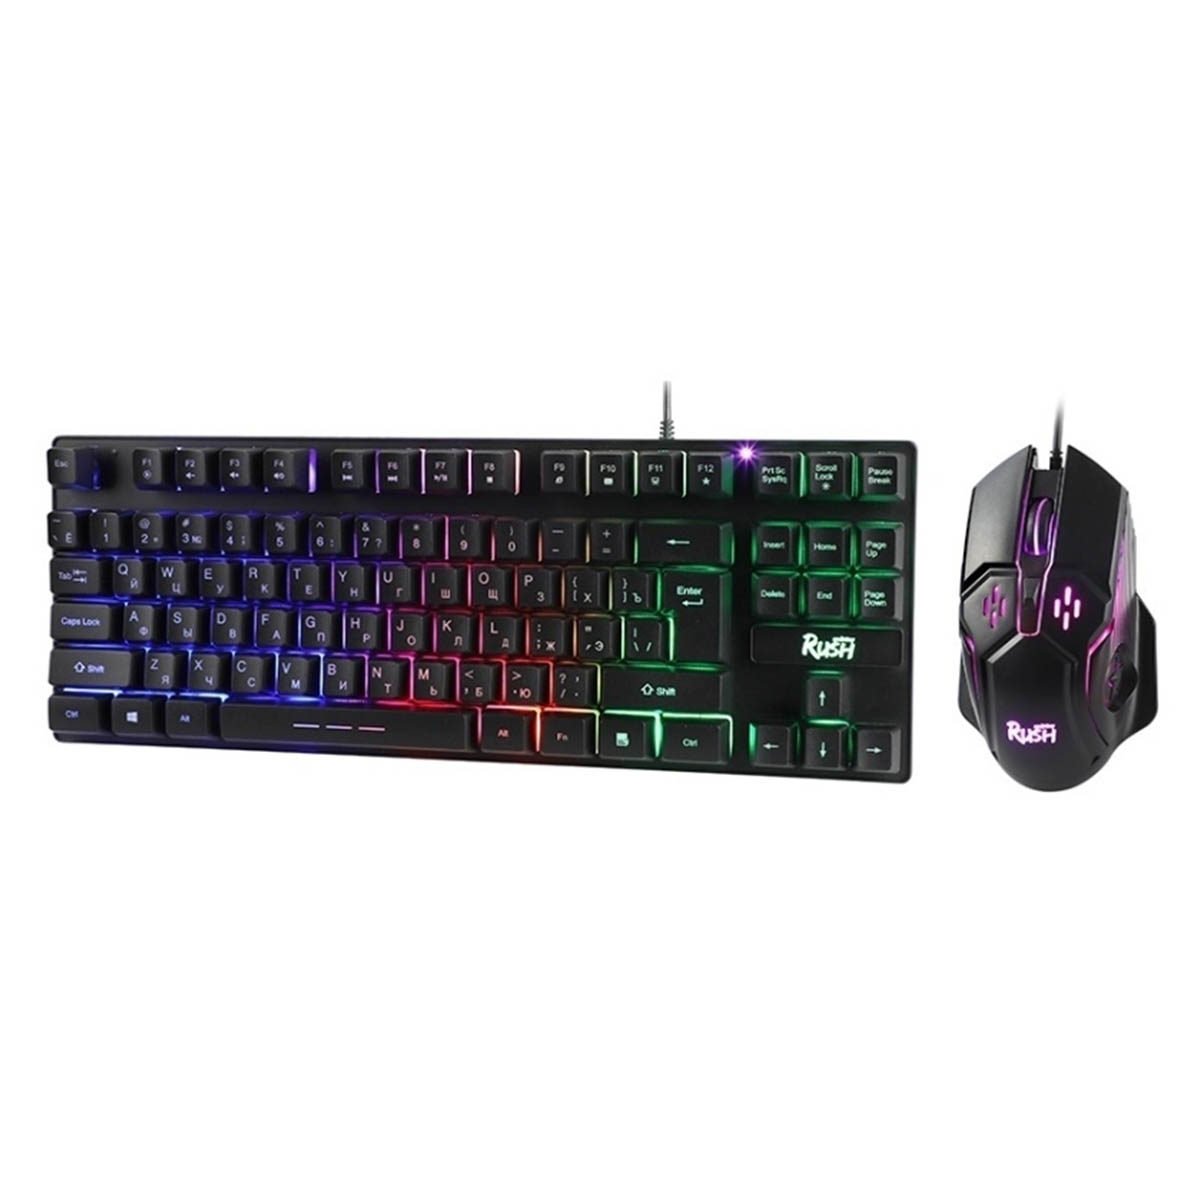 Игровой набор мышь, клавиатура, SMARTBUY Rush Comrade, USB, с подсветкой, цвет черный